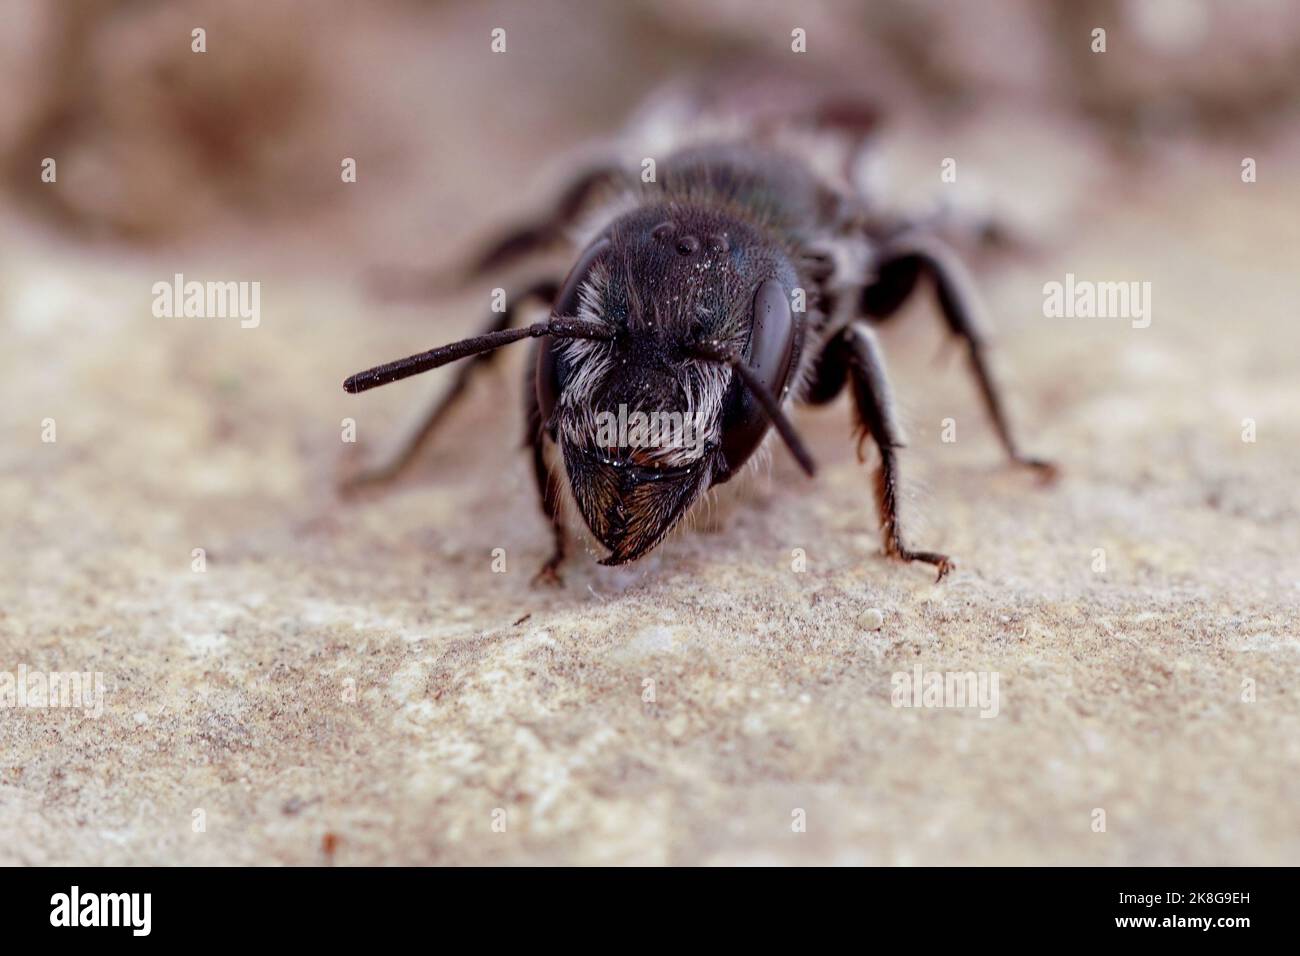 Detailed frontal closeup on a Mediterranean dark black solitary mason bee, Osmia cephalotes Stock Photo